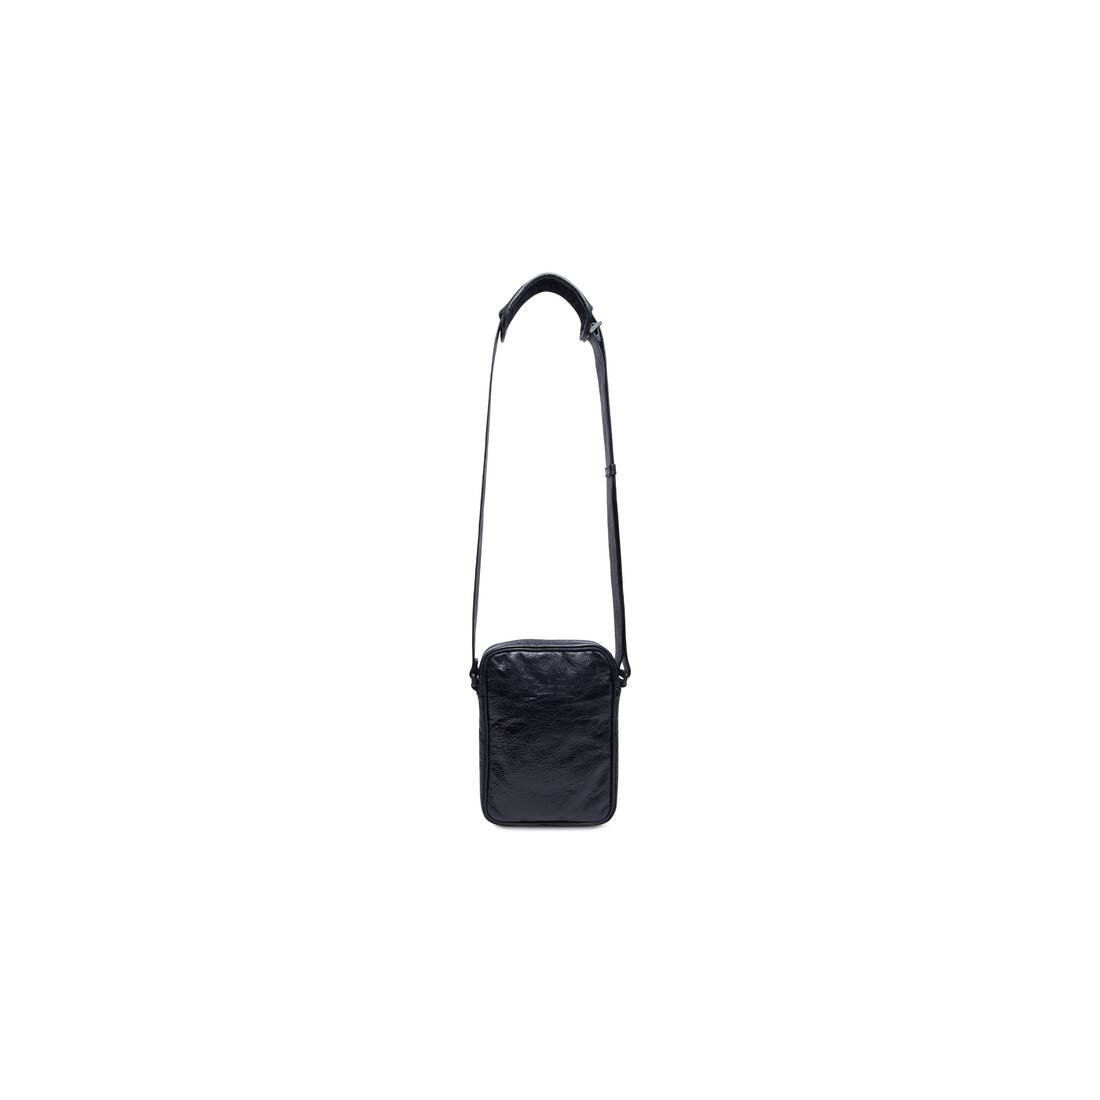 Men's Balenciaga / Adidas Small Crossbody Messenger Bag in Black - 7